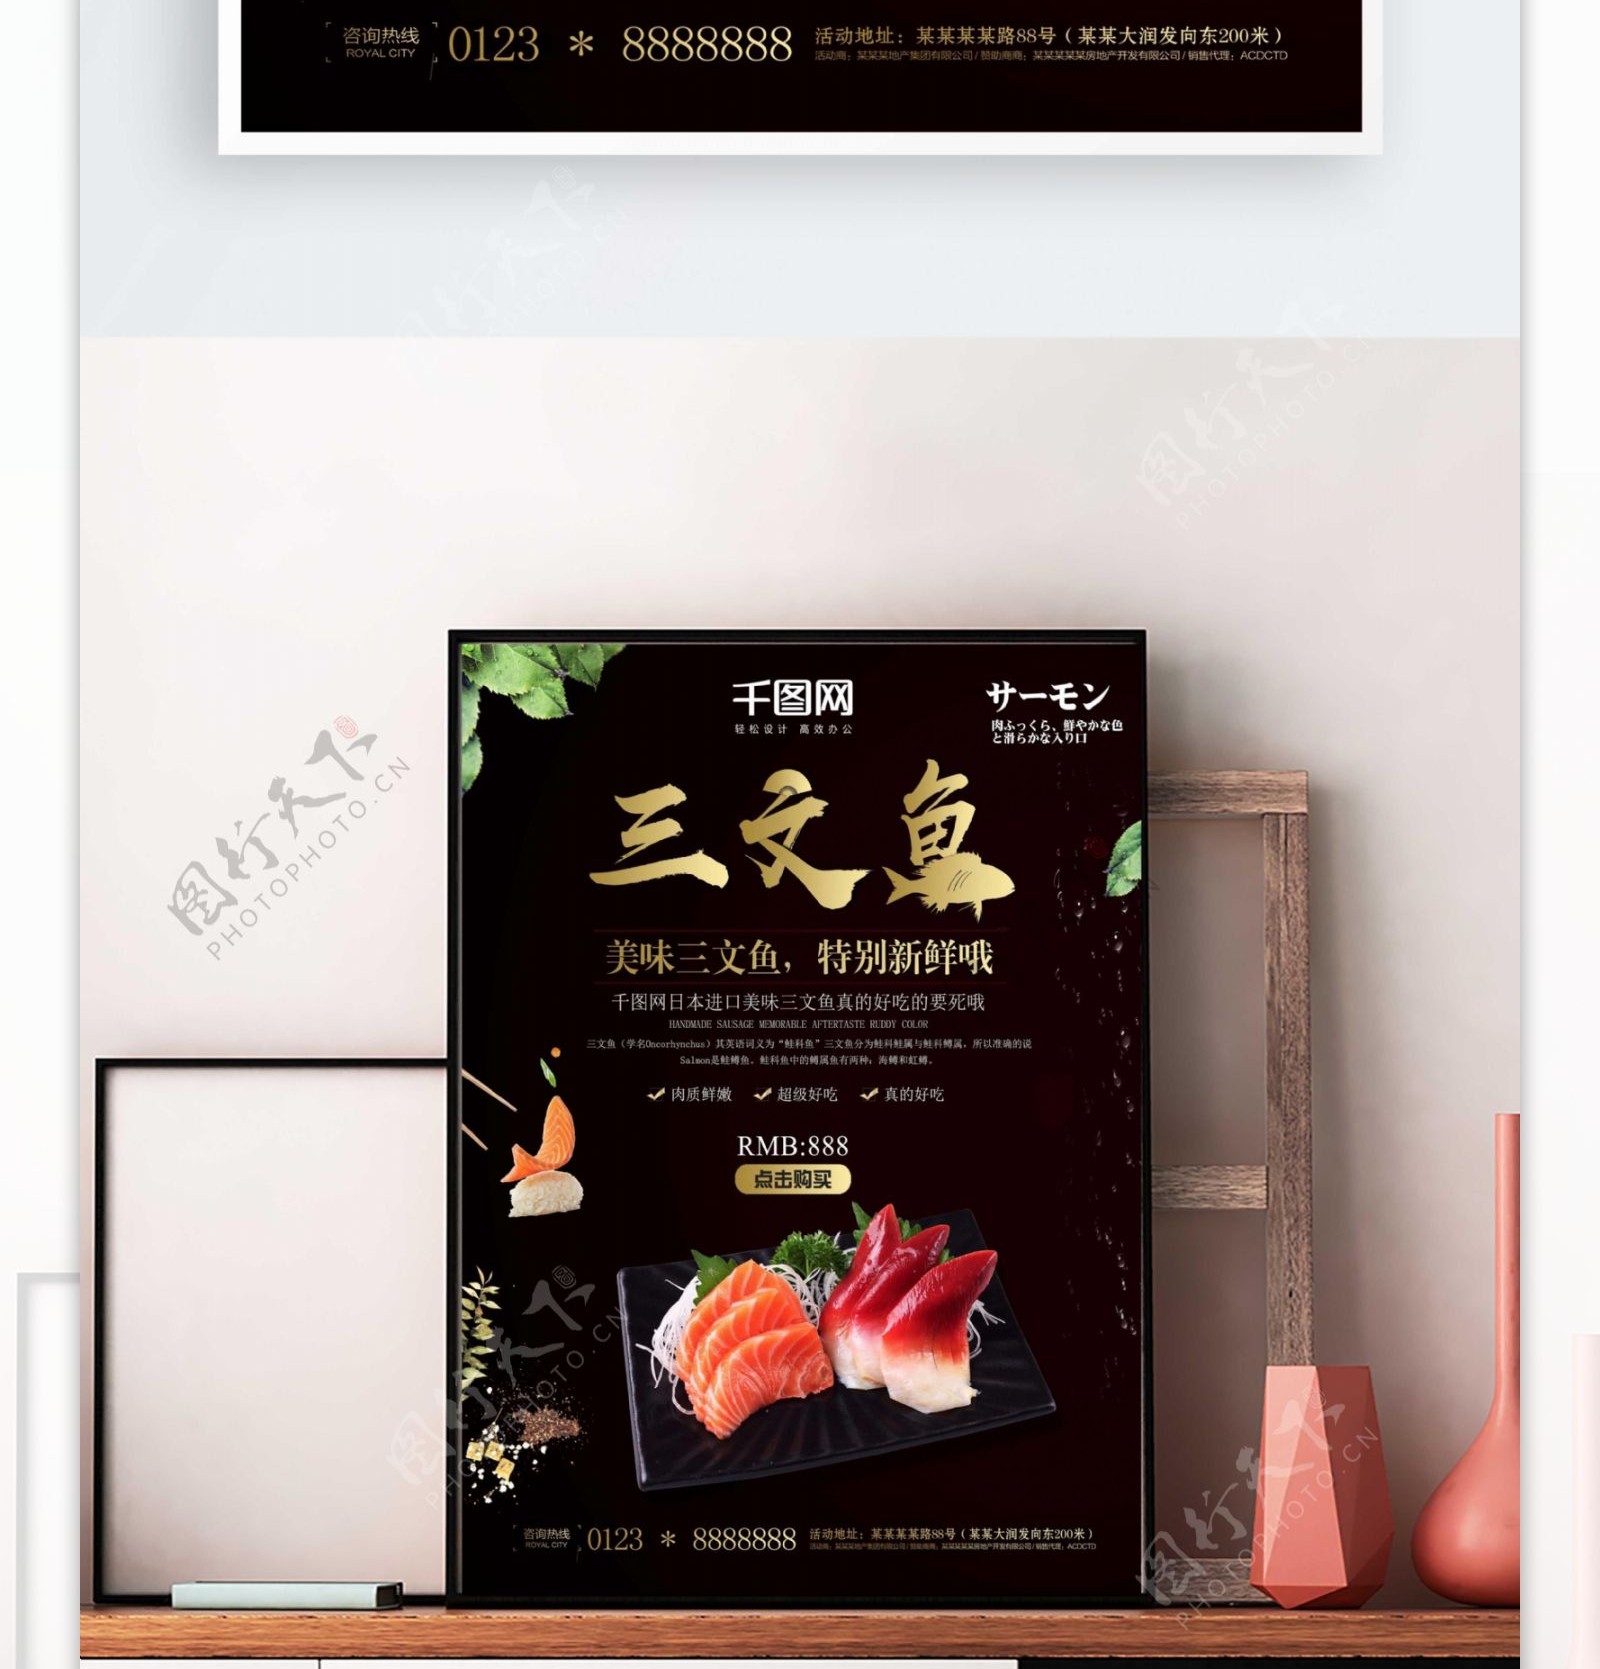 三文鱼日式料理店宣传日韩料理美食海报